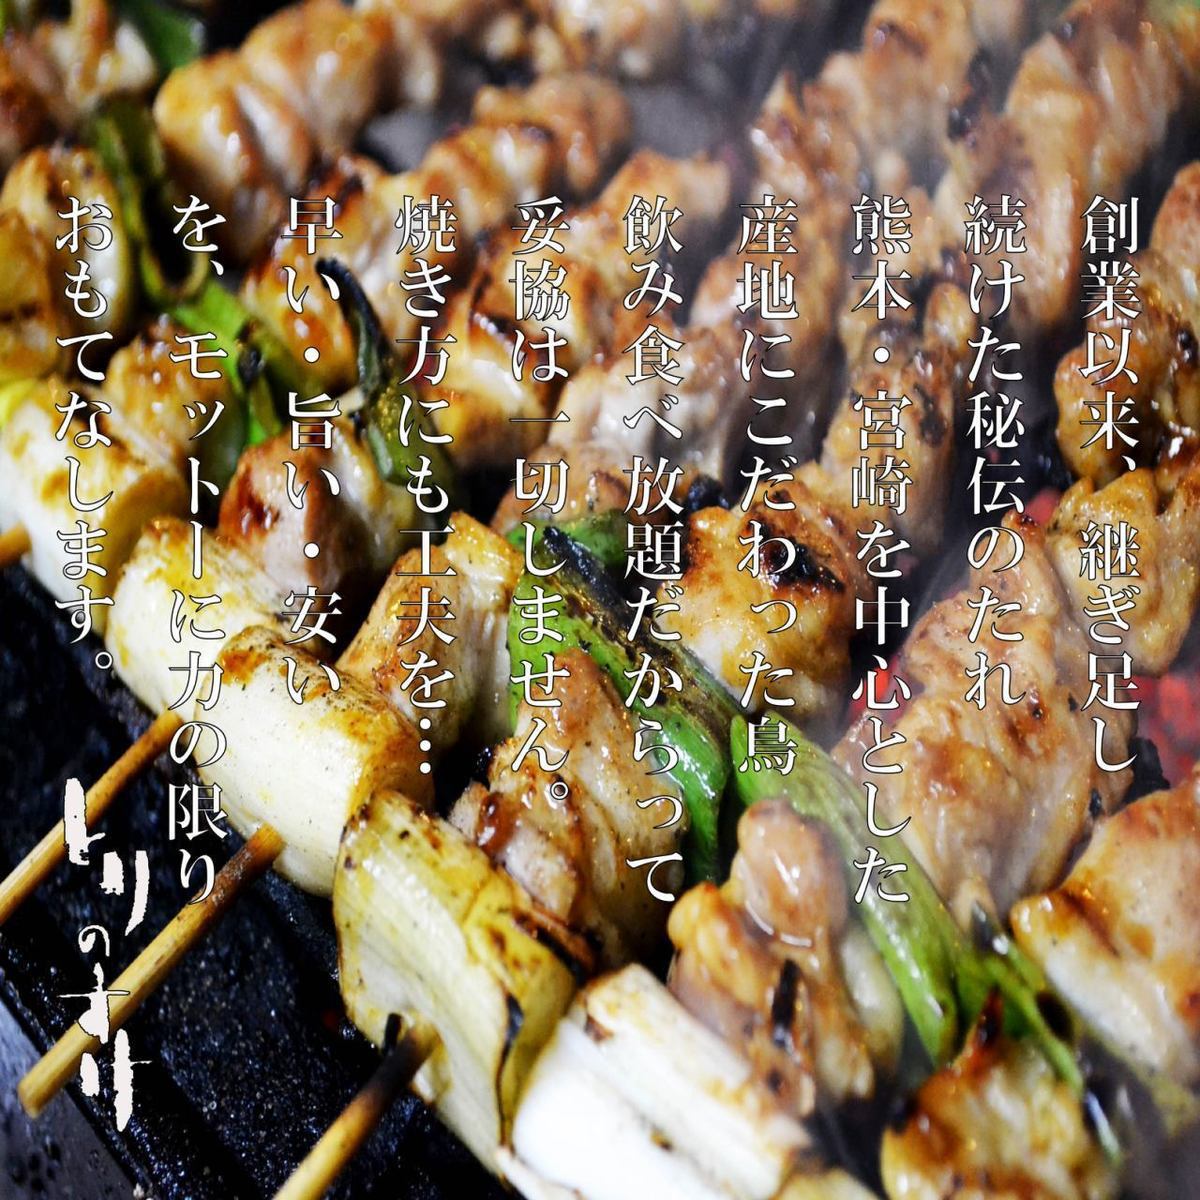 烤雞肉串吃到飽！套餐3,600日元起♪我們對食物的品質充滿信心！